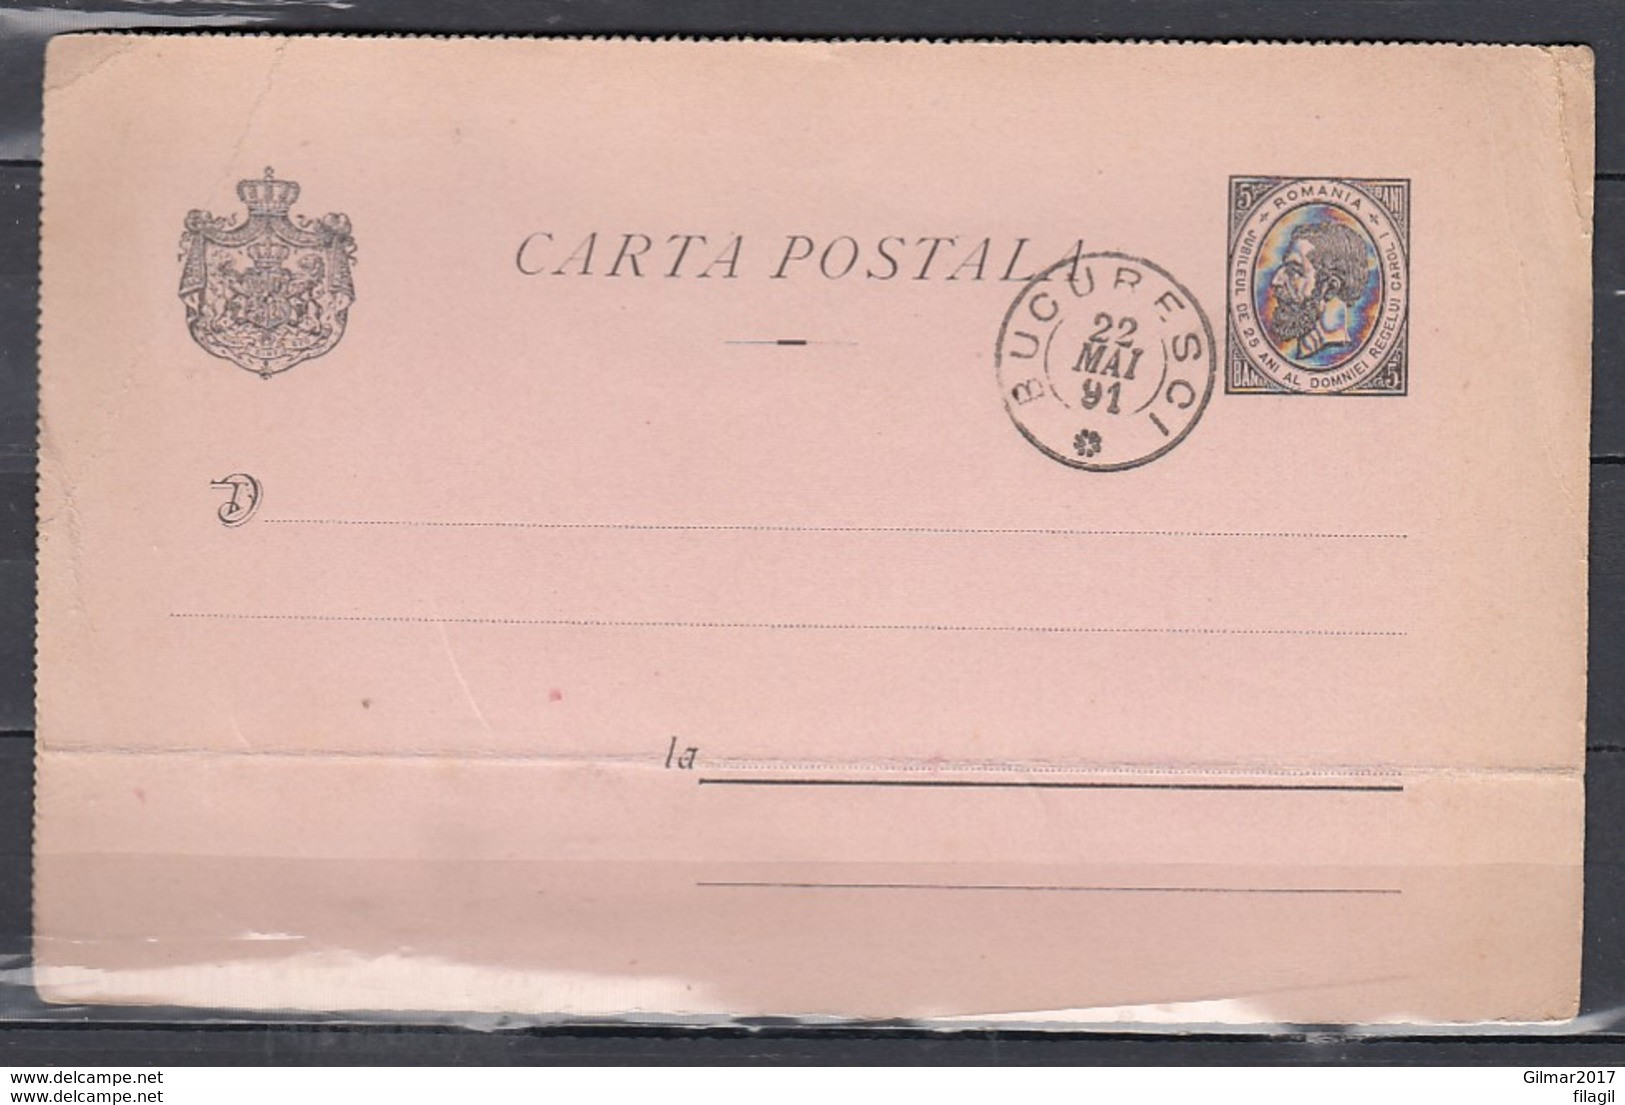 Carta Postale Bucuresci - Covers & Documents